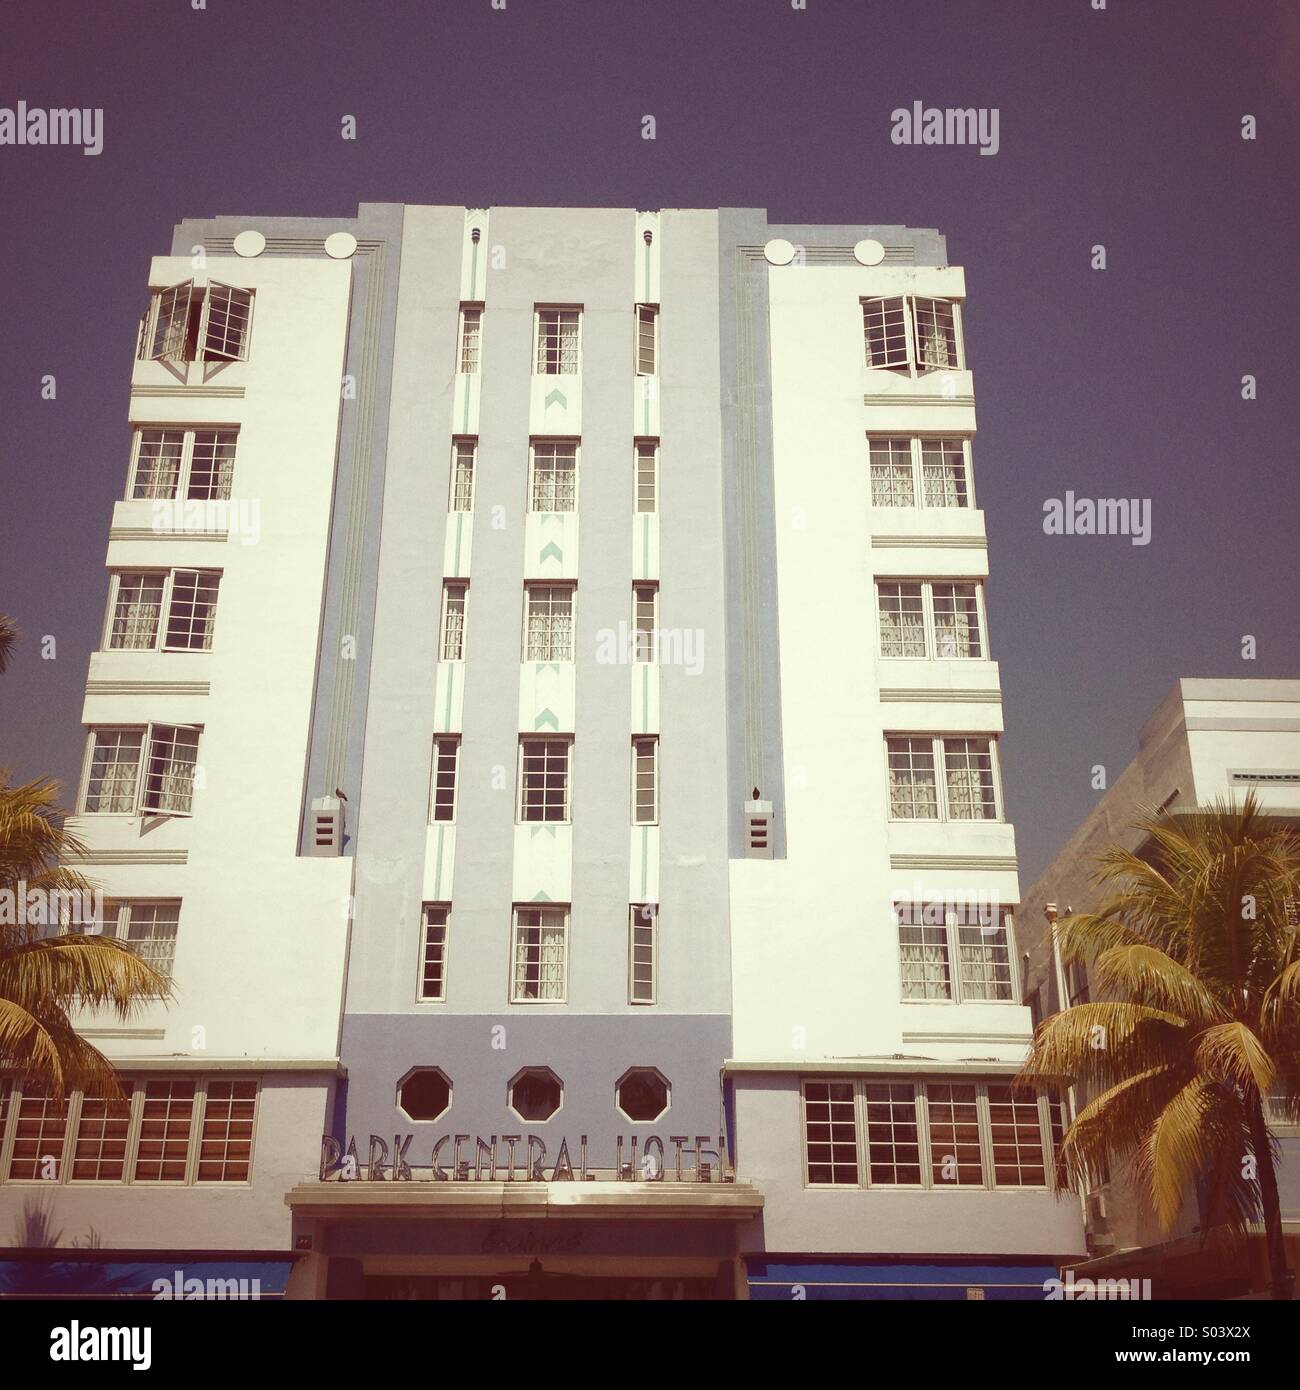 Park Central Hotel, South Beach, Miami, America Stock Photo